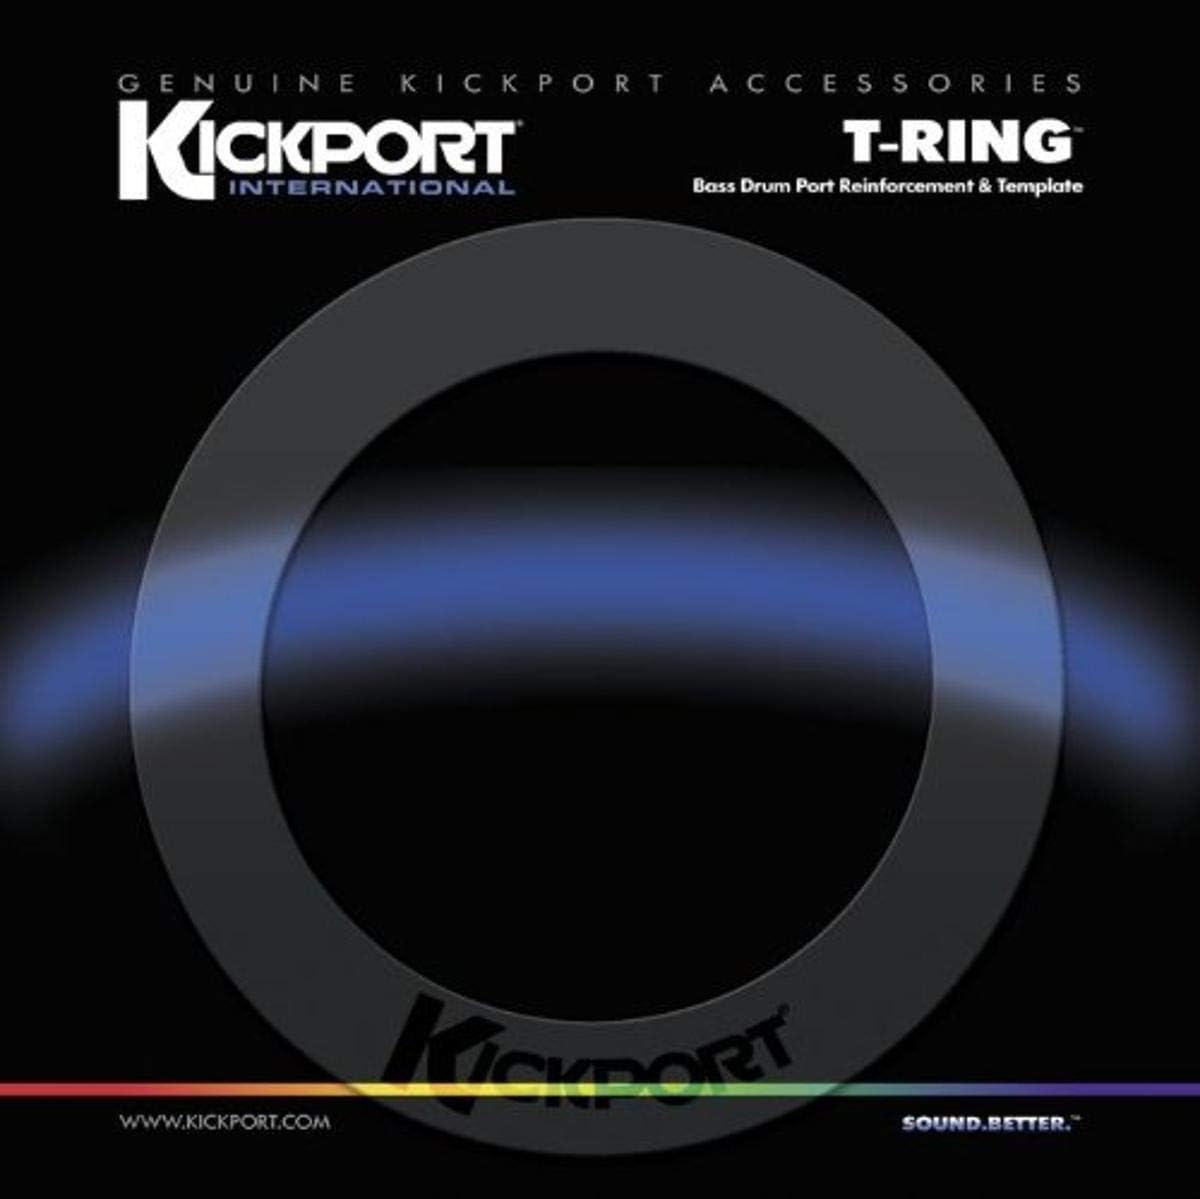 Kickport T-Ring Bass Drum Port Template & Reinforcement - Clear - Joondalup Music Centre